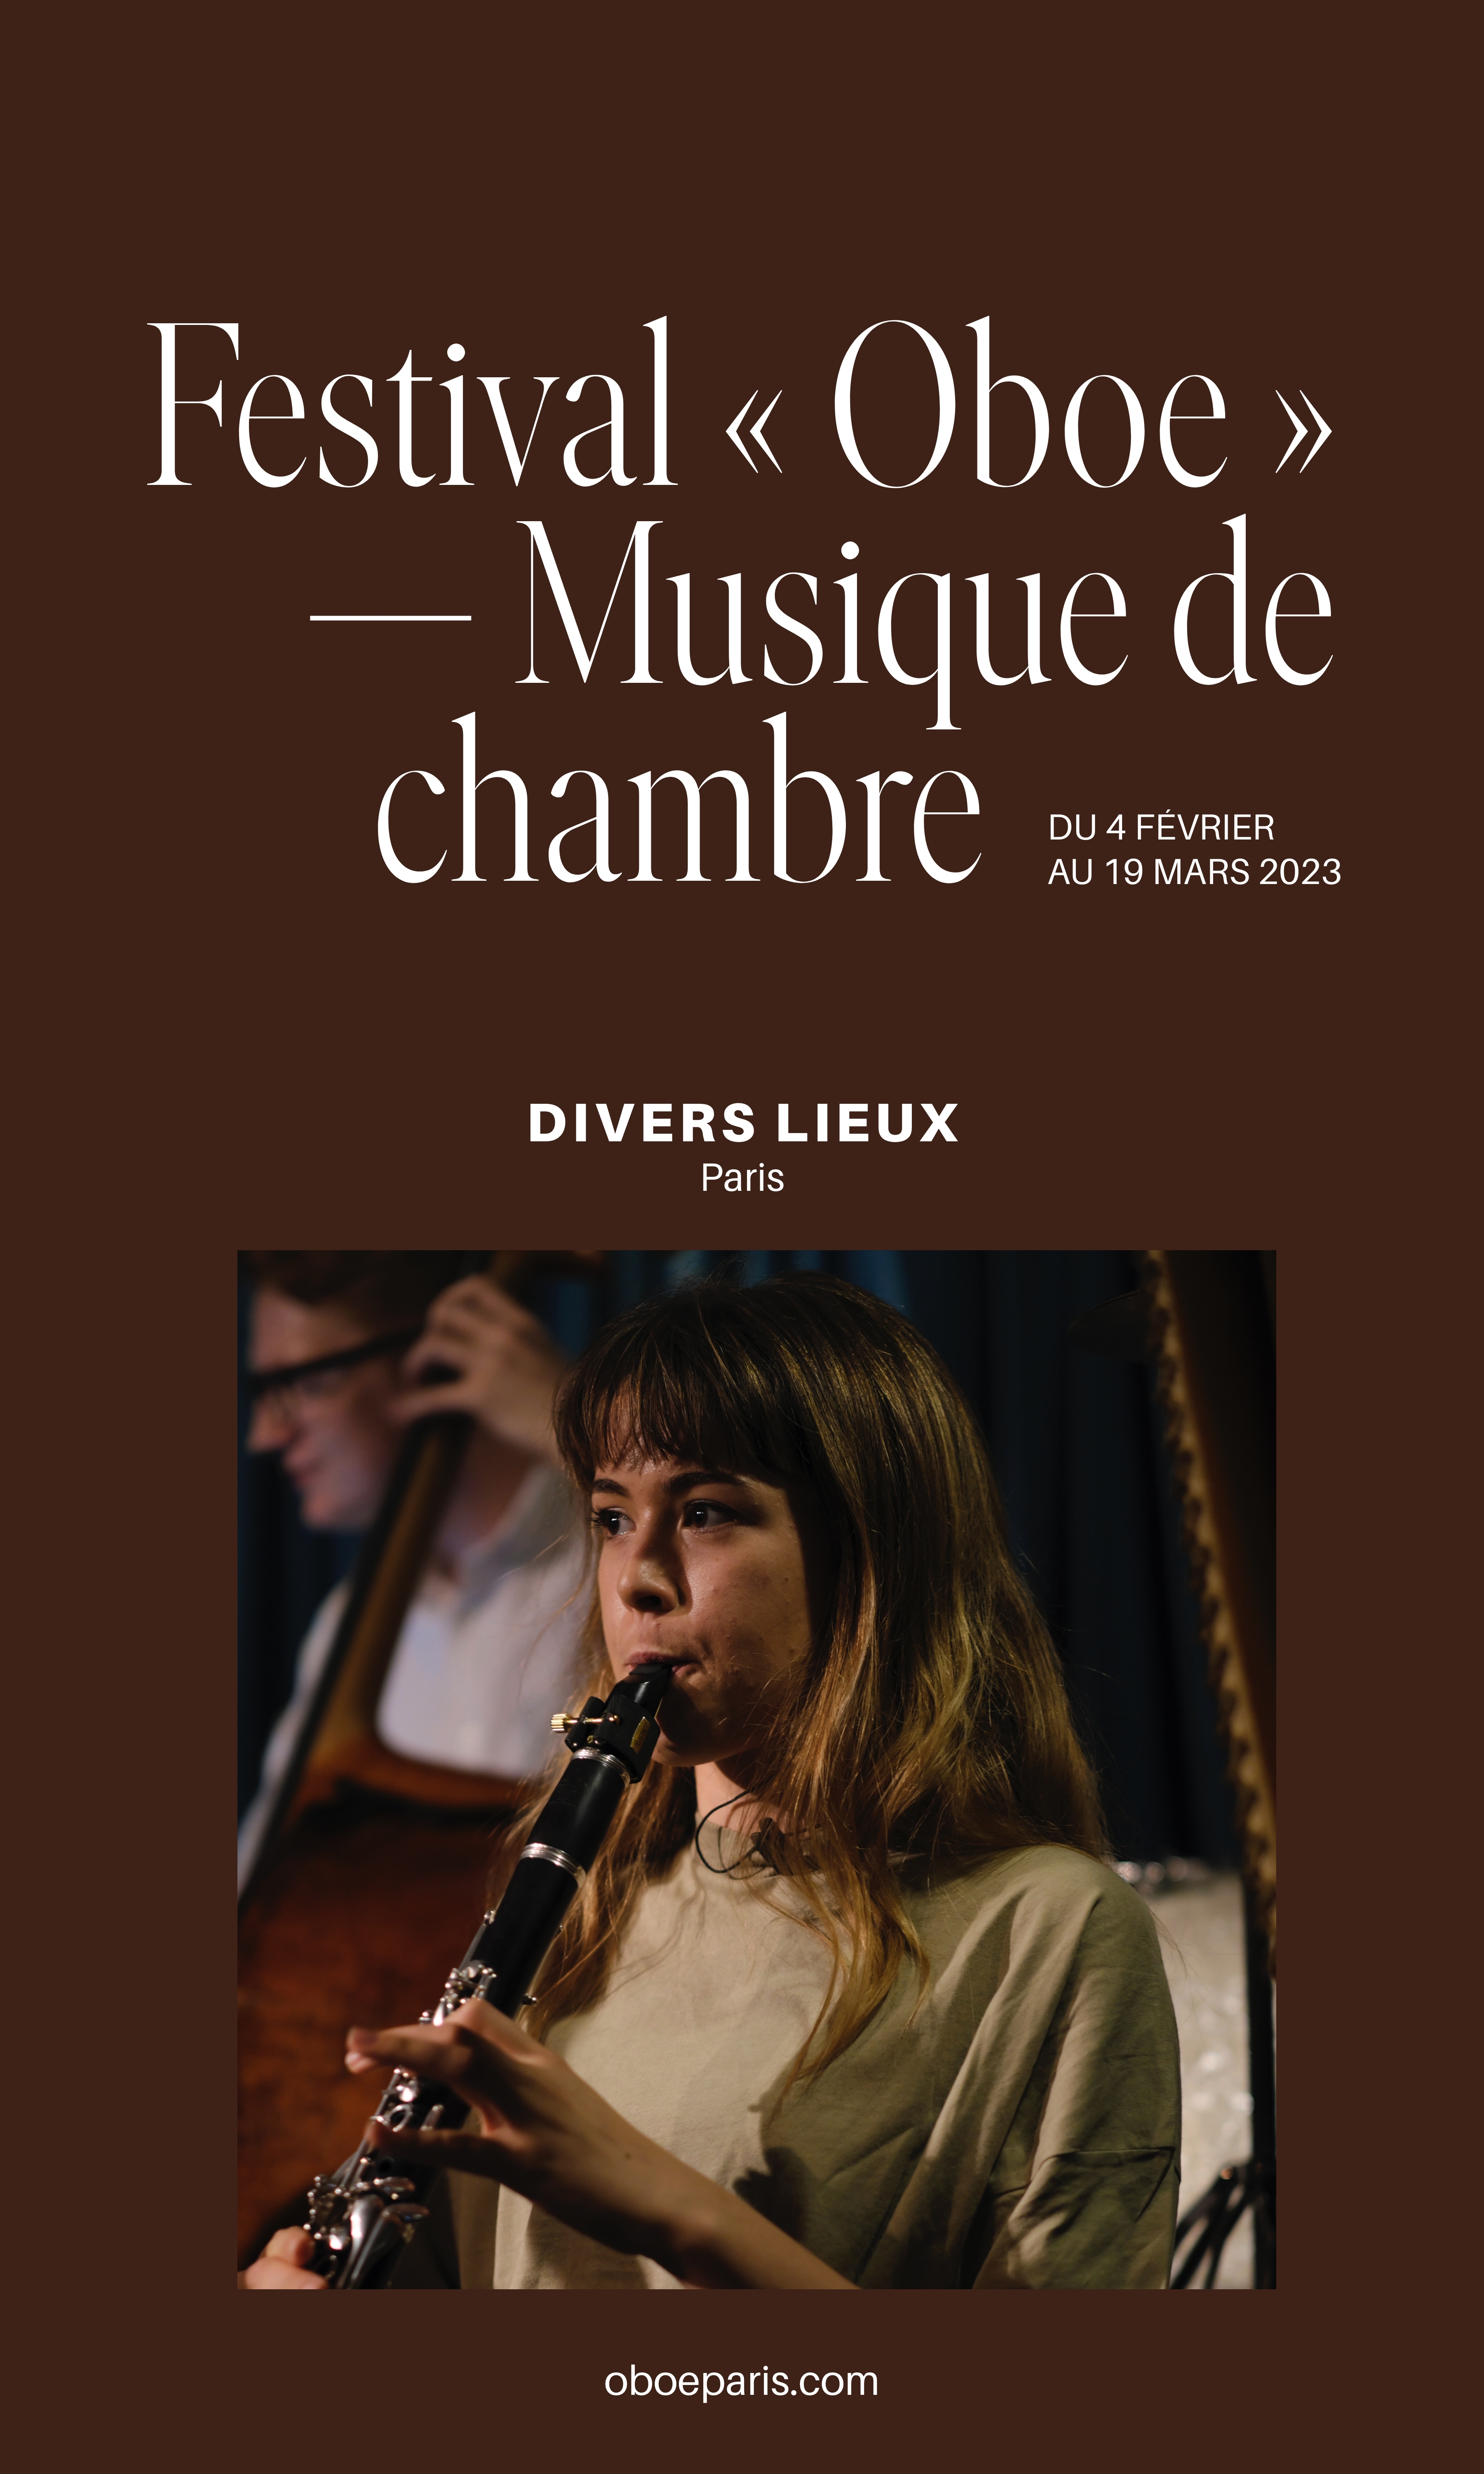 Festival « Oboe » – Chamber music